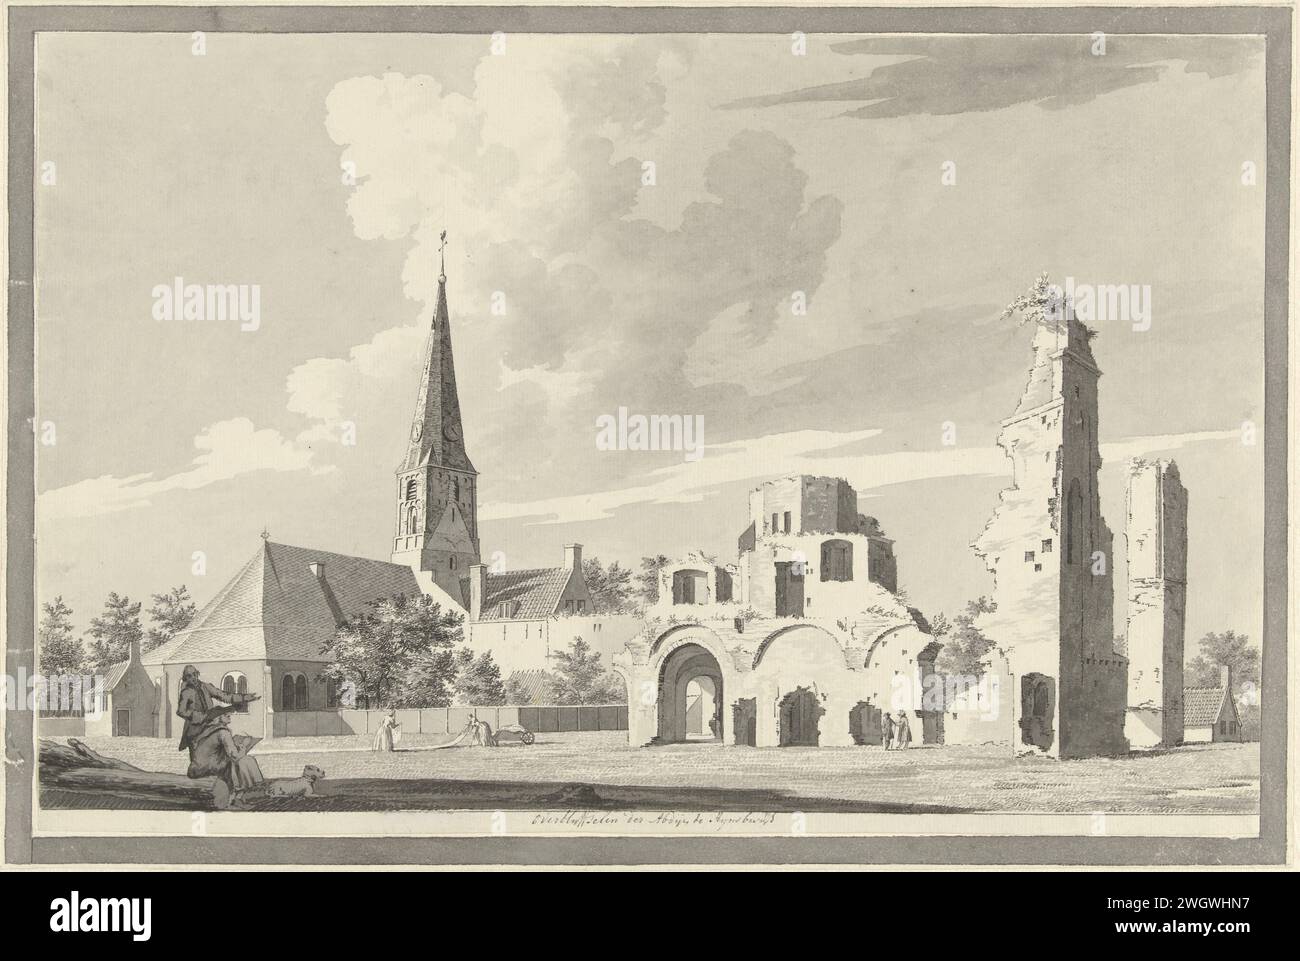 Les ruines de l'abbaye de Rijnsburg, Gerrit Toorenburgh, 1742 - 1785 papier à dessin. stylo à encre / brosse ruine de l'église, monastère, etc Rijnsburg Banque D'Images